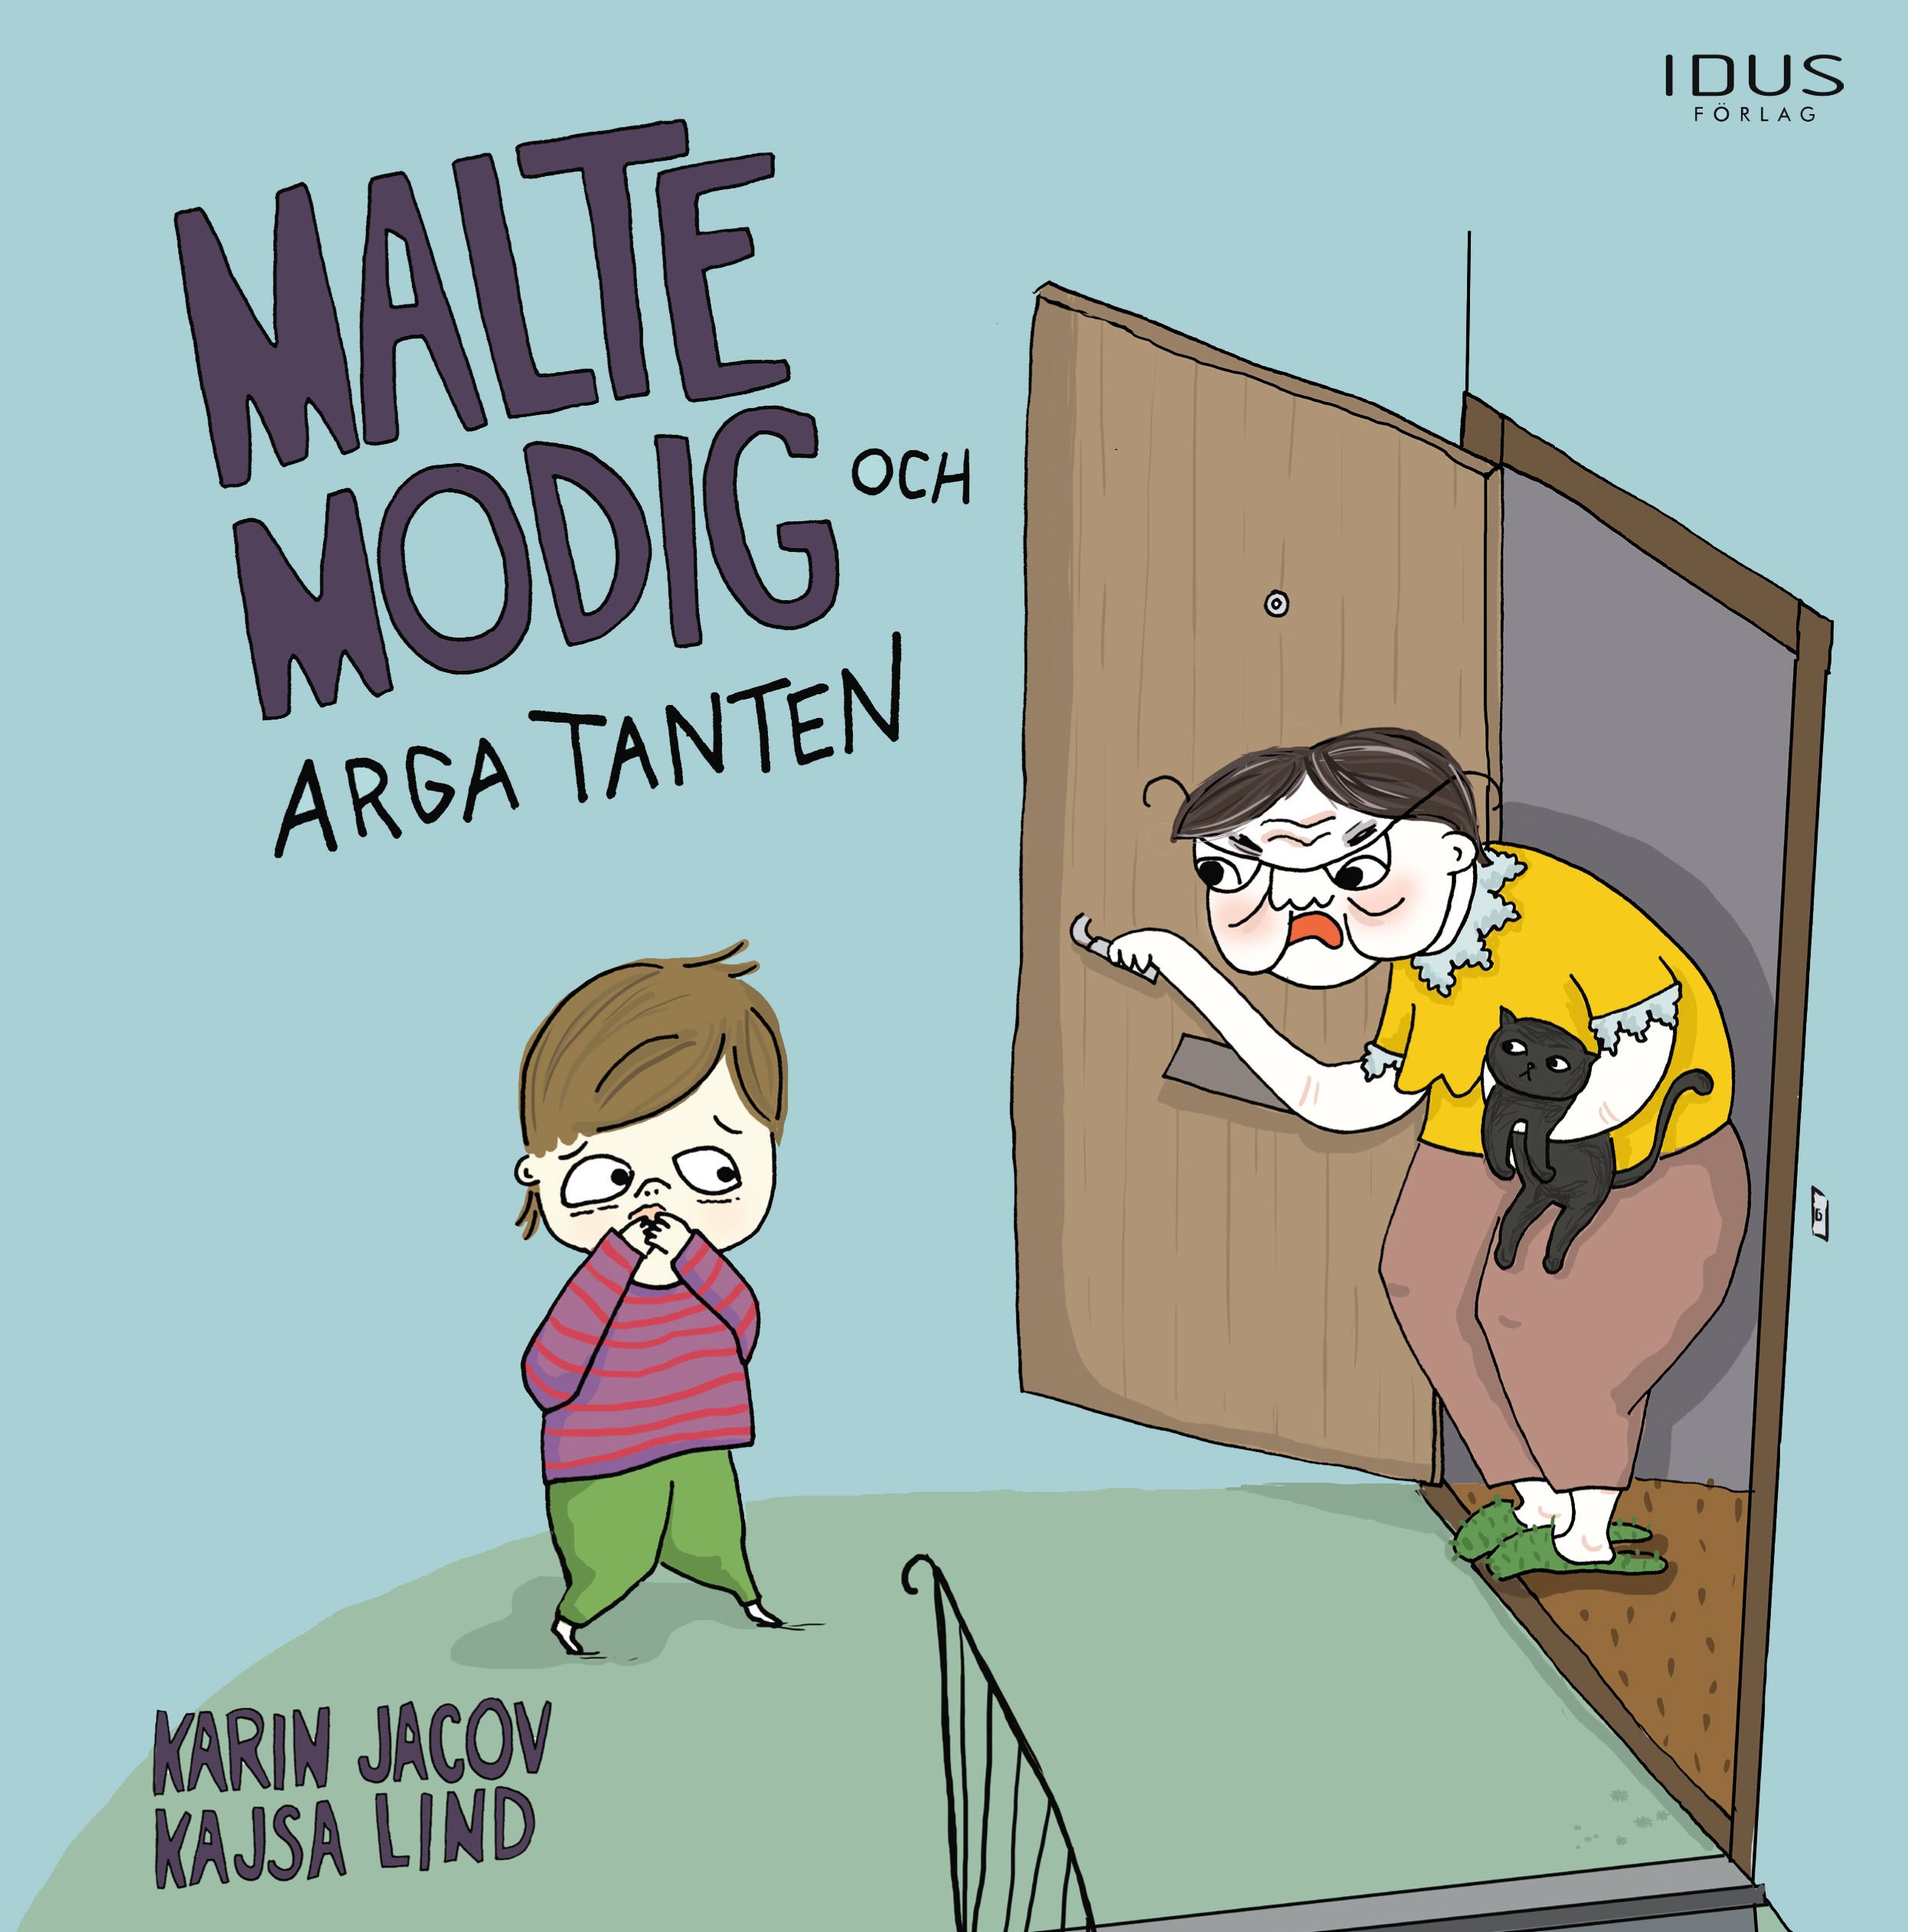 Malte Modig och arga tanten, e-bok av Karin Javoc